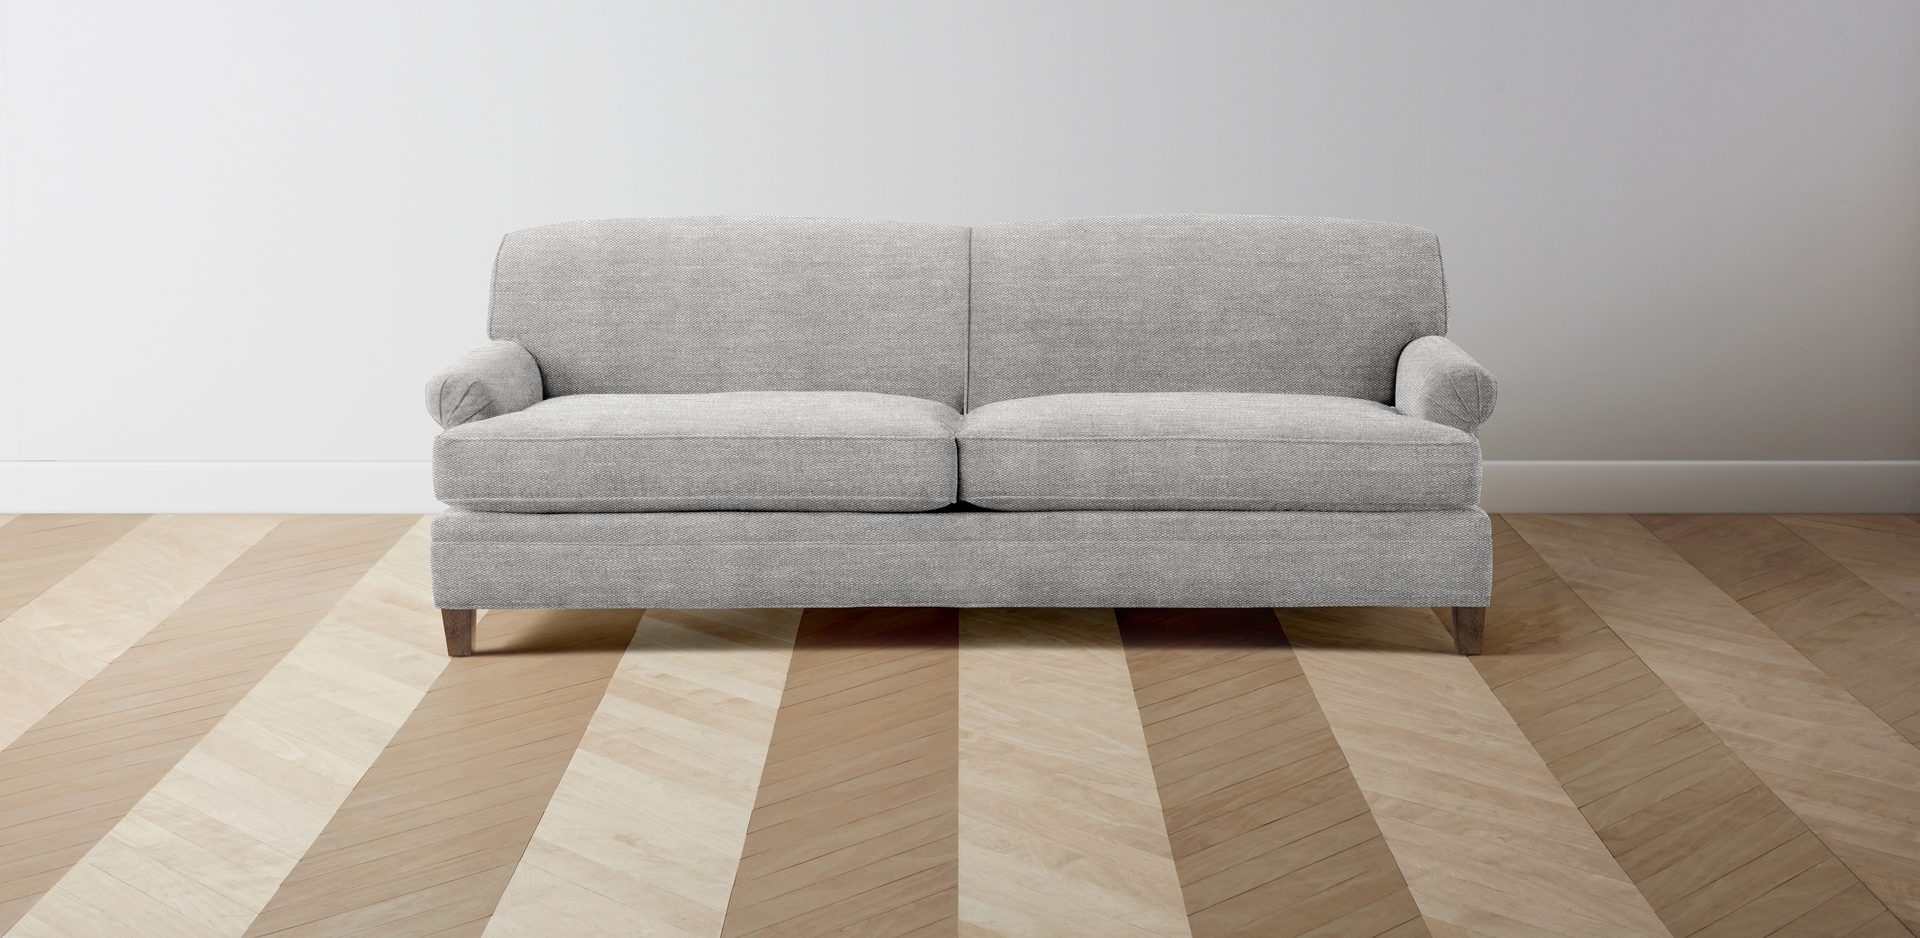 The Carmine sofa - Image 0